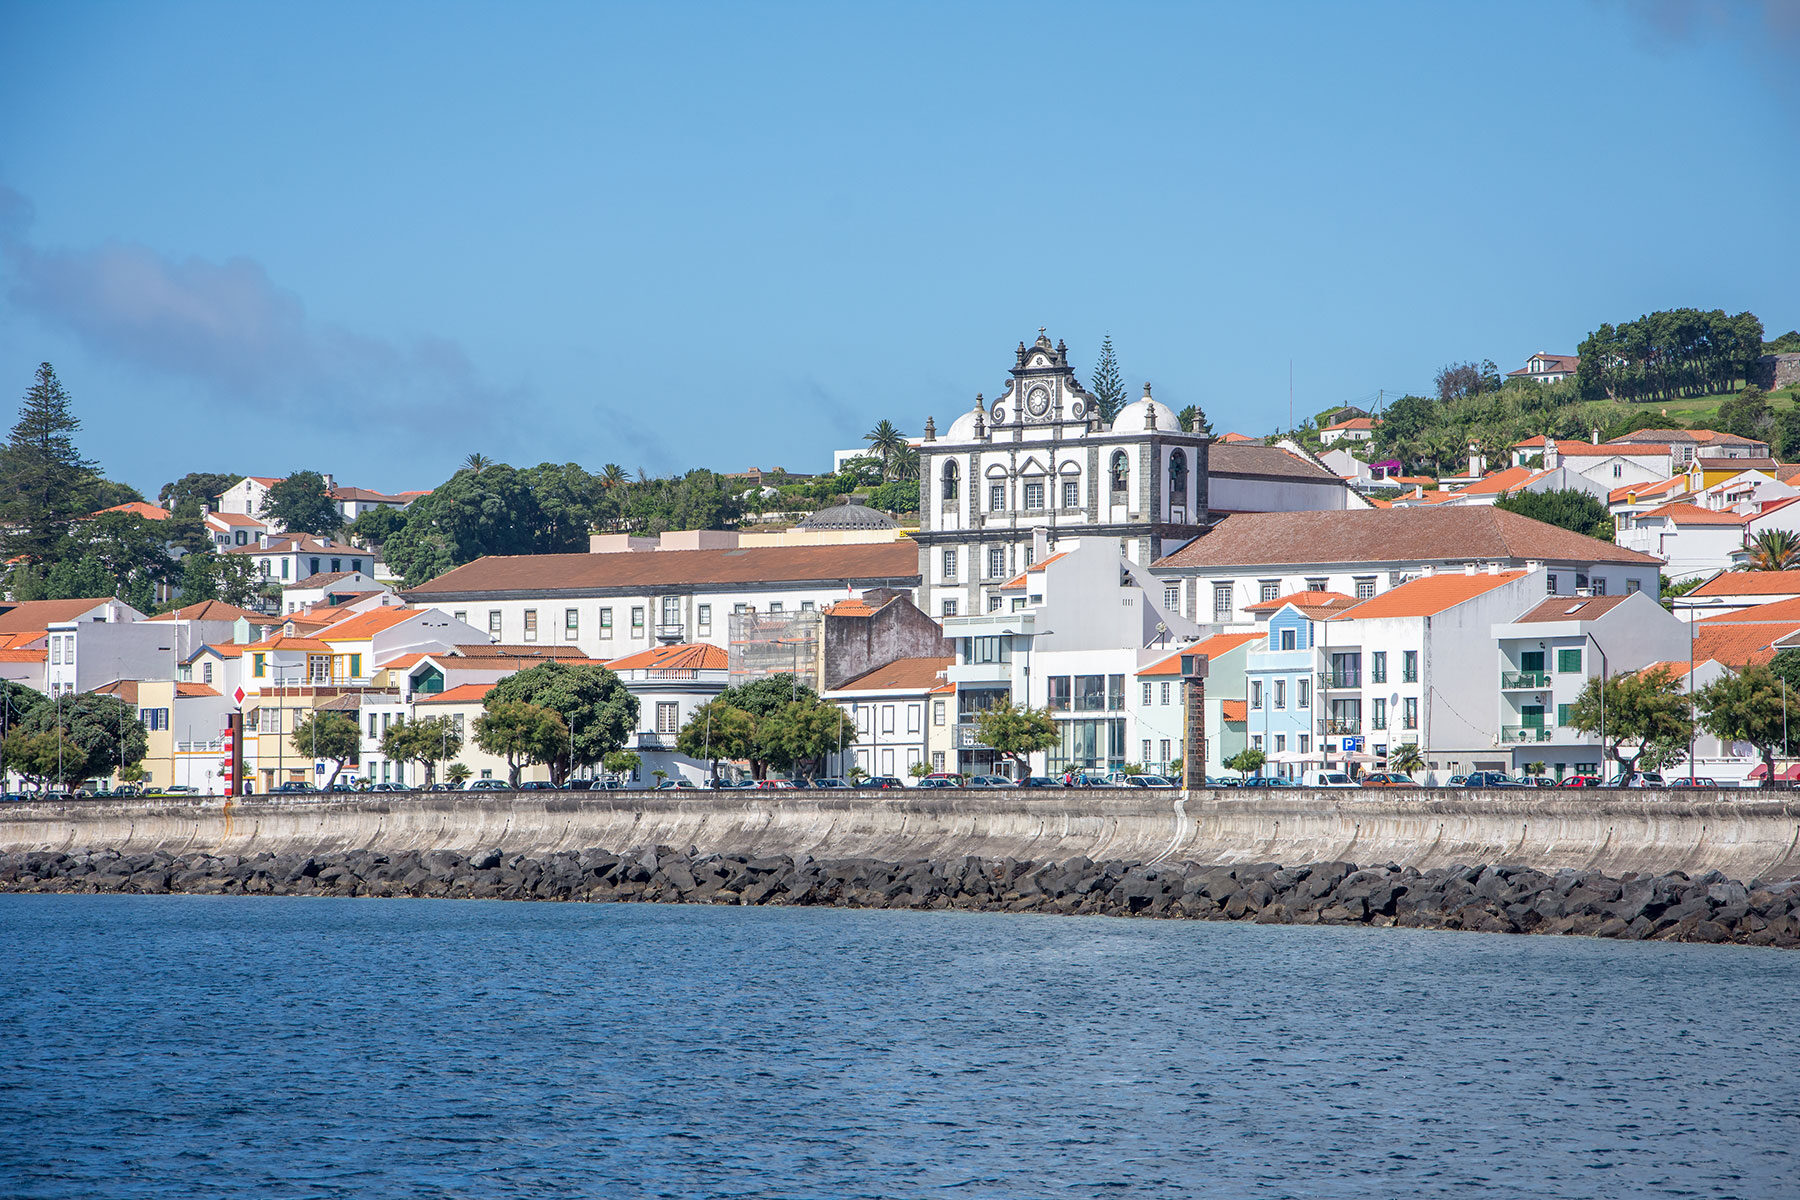 Horta, Ilha do Faial, Açores - O que visitar no Faial